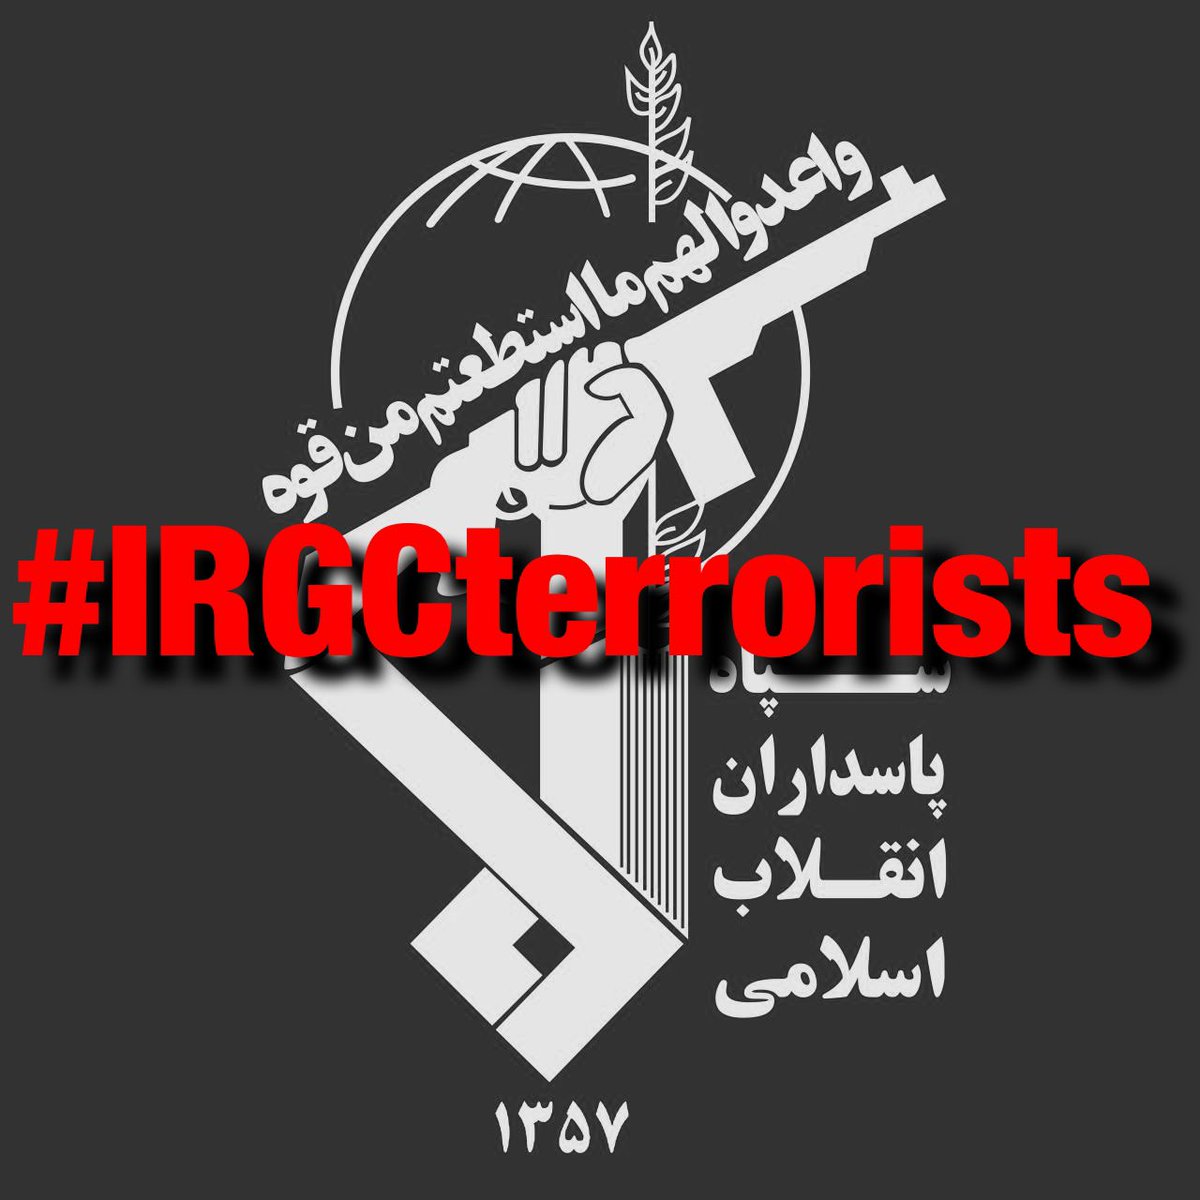 @JudithFighter ملی گرایی و ایران گرایی فقط شعار نیست
باید عمل کرد
نتیجه هرچه باشد
همراهی کنیم با 
#وحید_بهشتی 
برای مقابله با قاتلان ملت
#IRGCterrorists